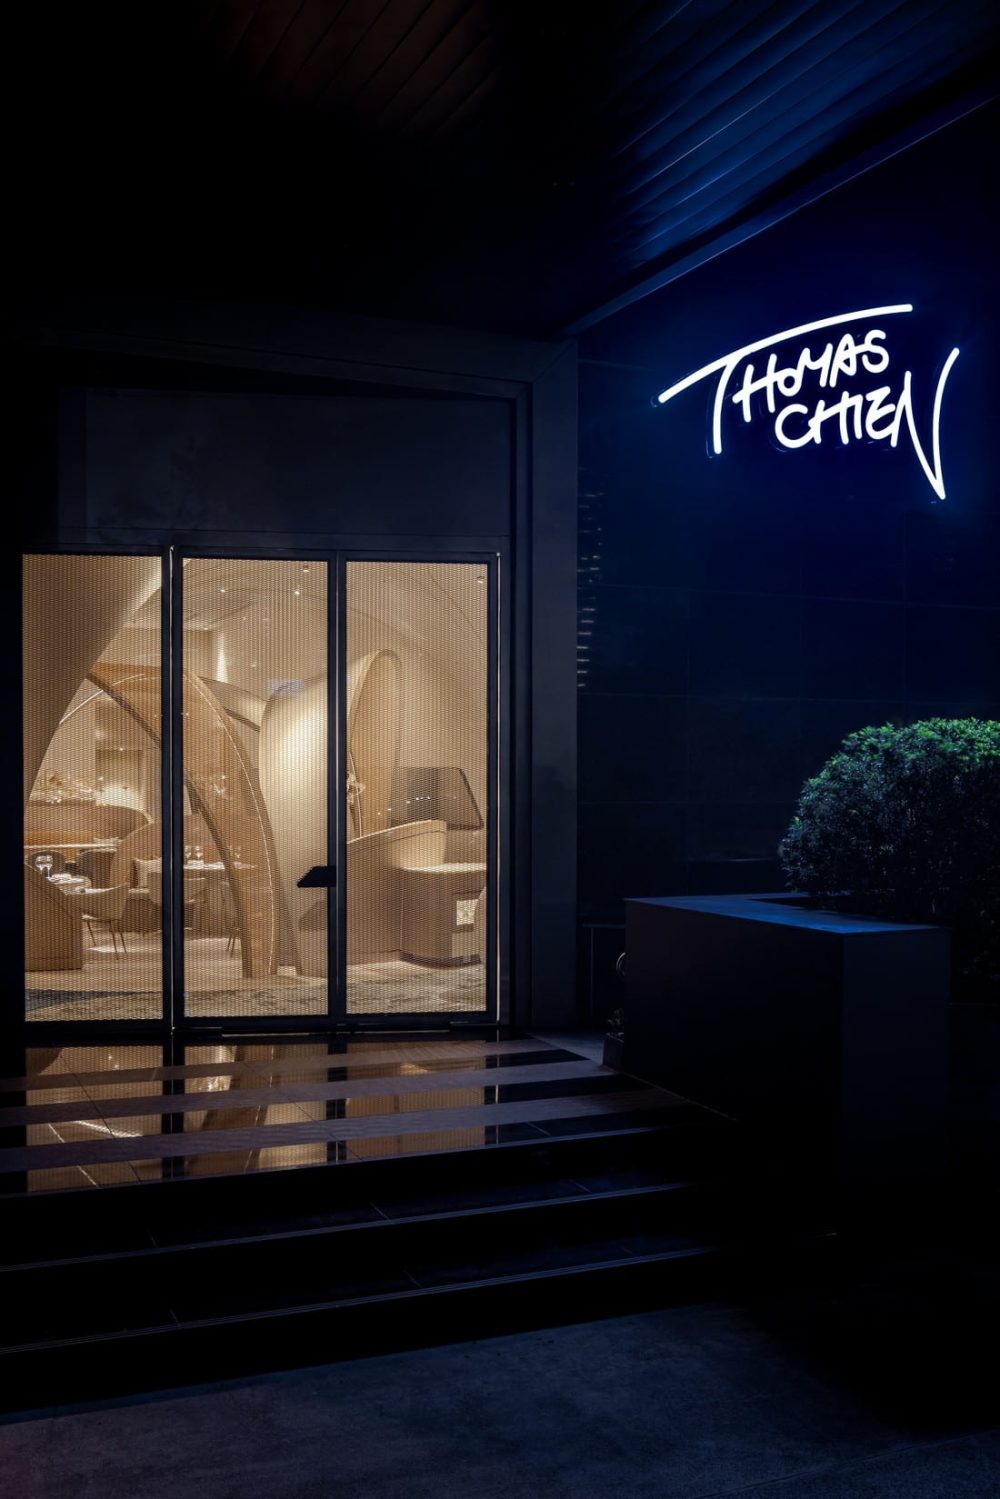 Thomas Chien Restaurant / TaG Living